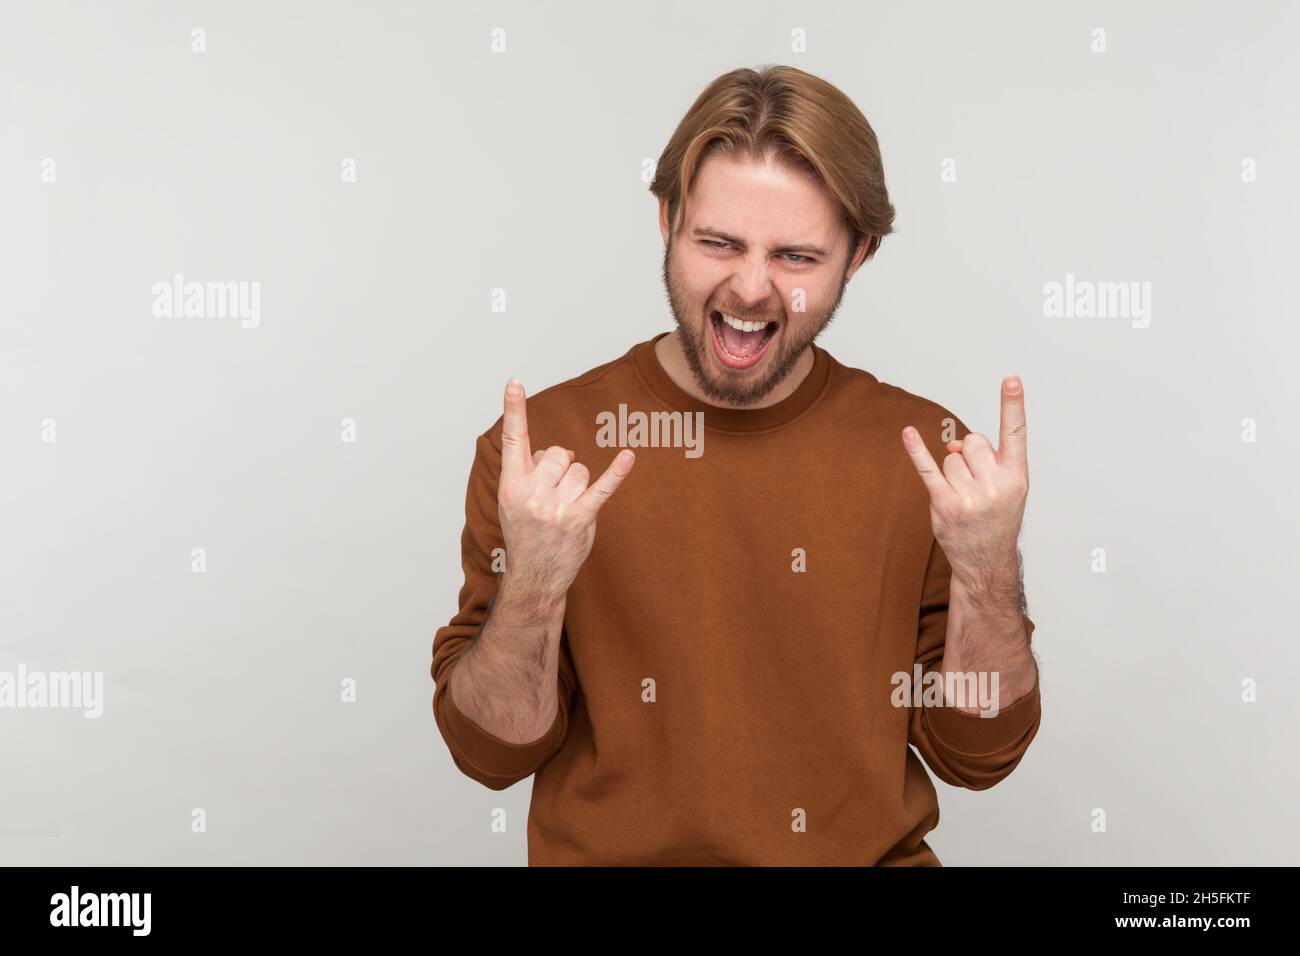 Porträt eines Mannes mit Bart, der Sweatshirt trägt, mit Rock and Roll-Zeichen-Handbewegung, schreiend, mit aufgeregt Gesichtsausdruck. Innenaufnahme des Studios isoliert auf grauem Hintergrund. Stockfoto